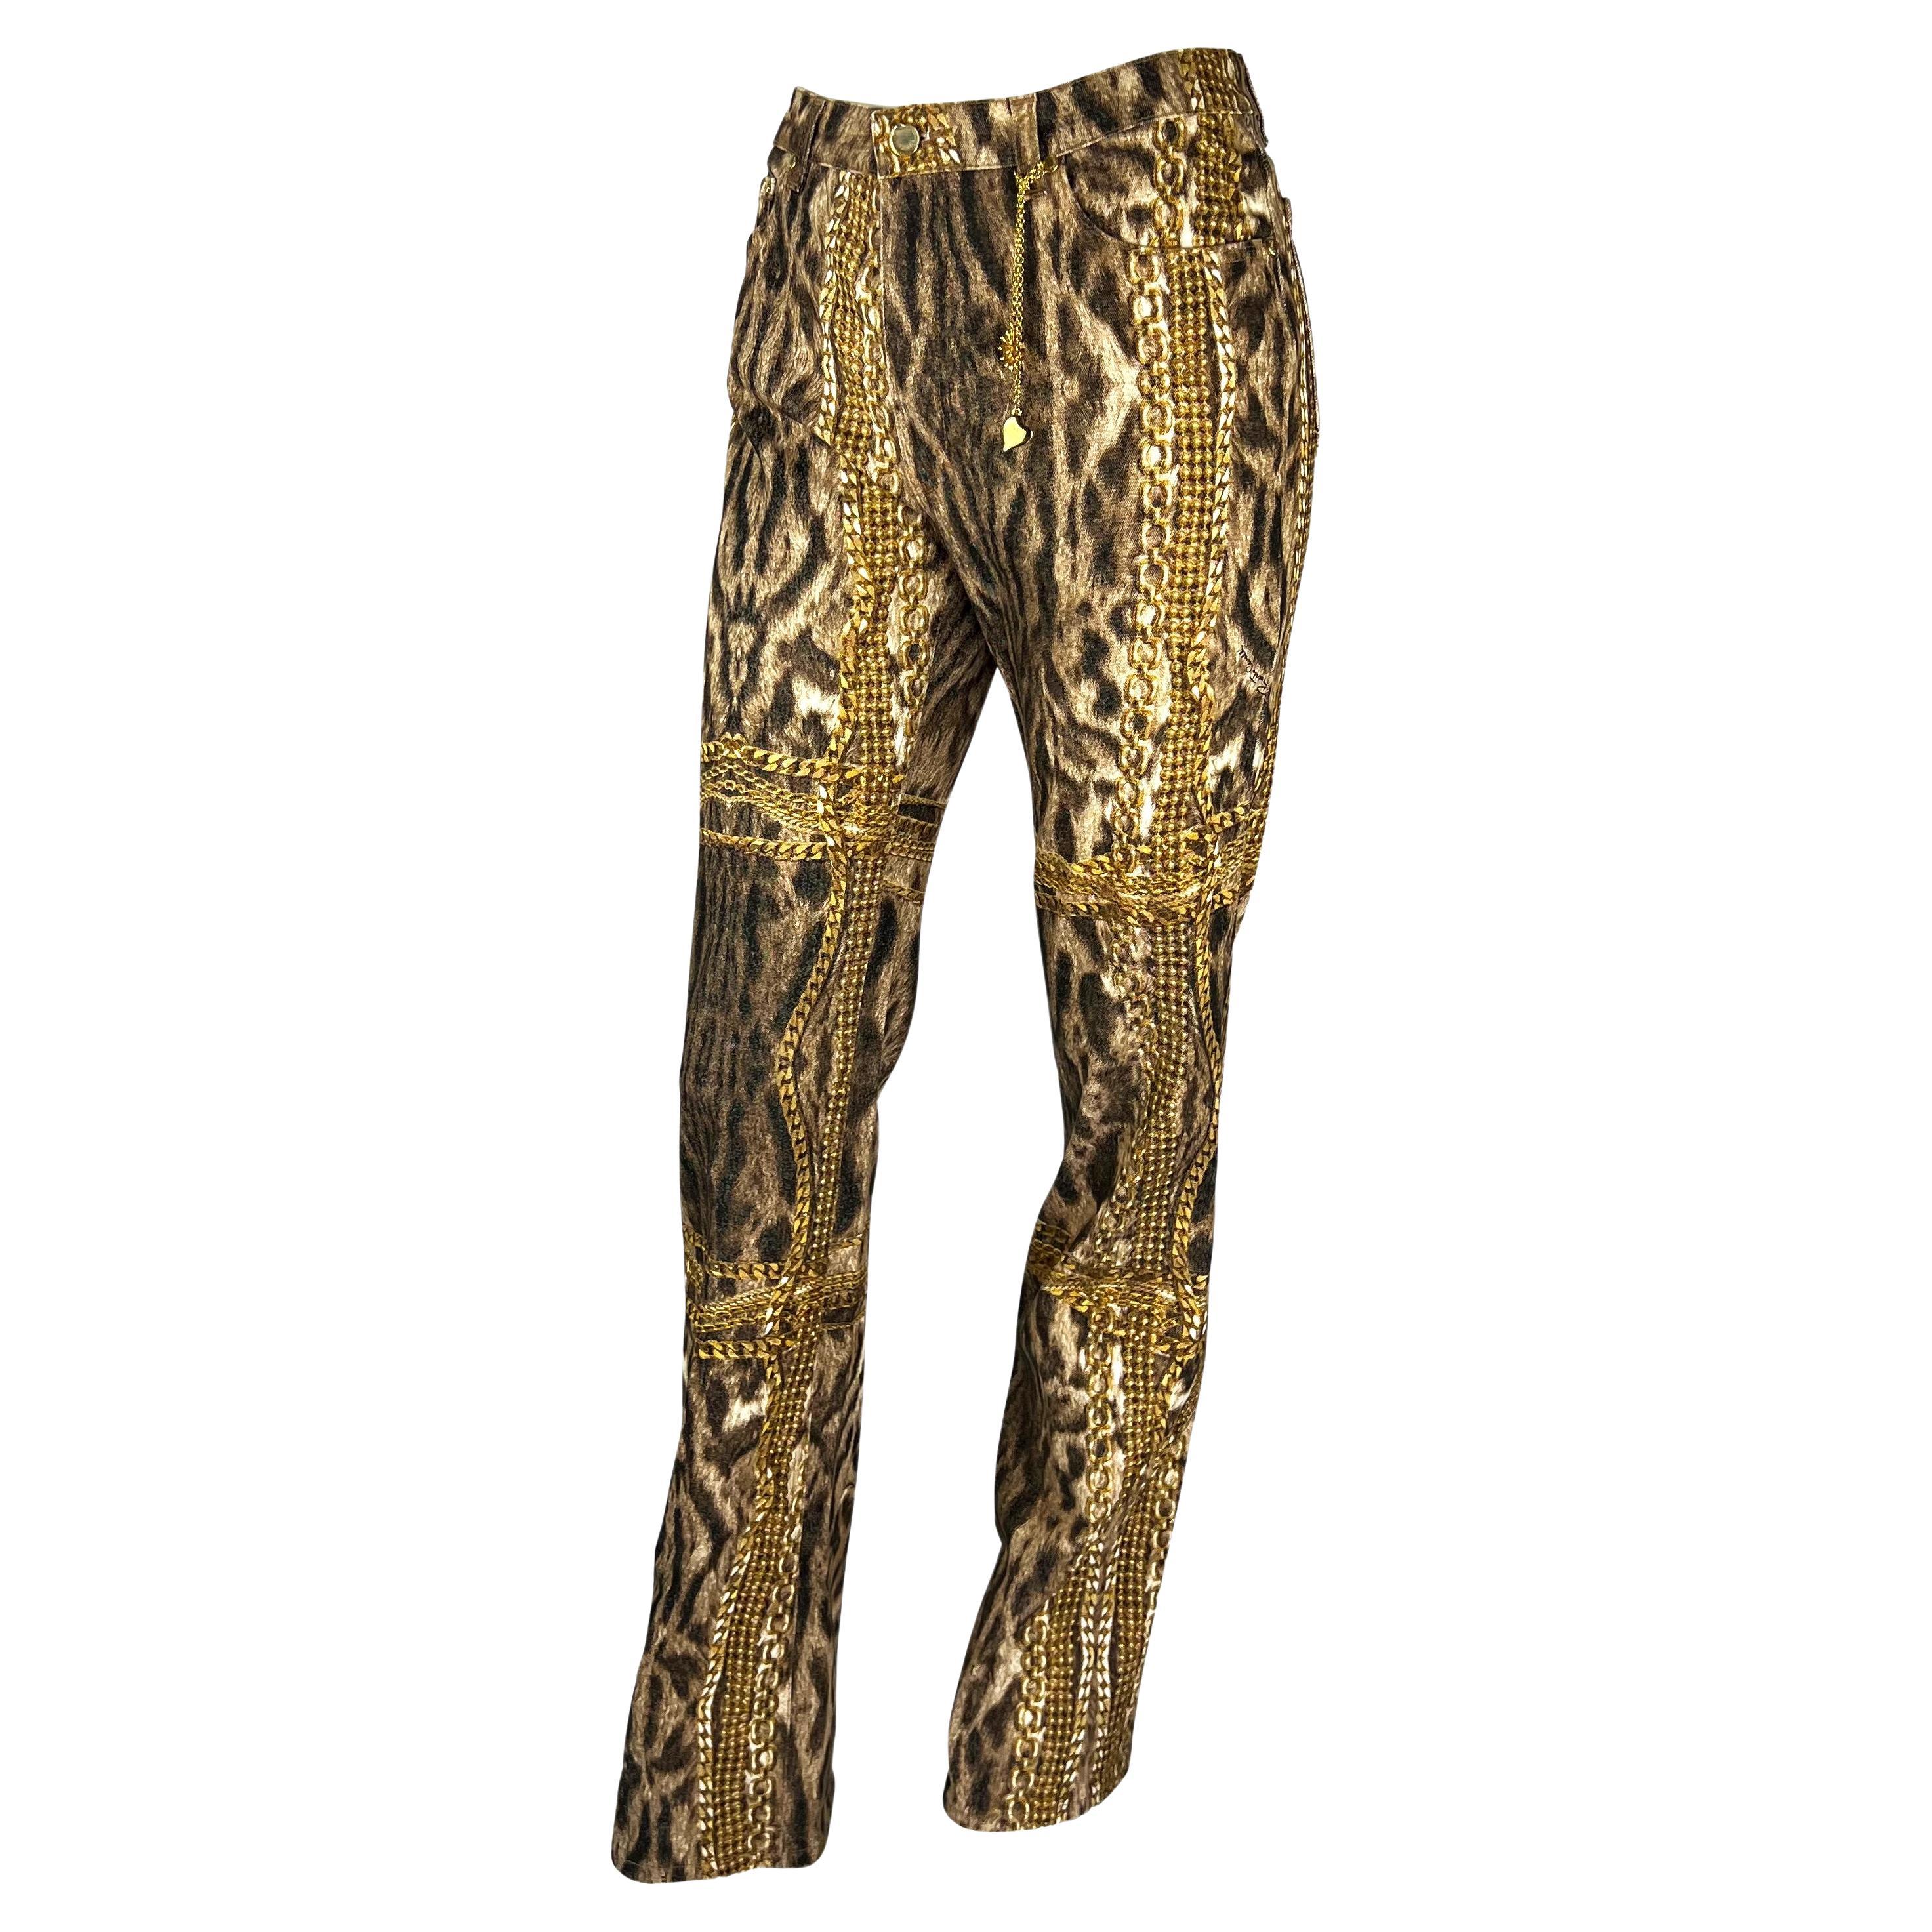 Présentation d'un pantalon en denim à imprimé guépard Roberto Cavalli. Datant de 2003, ce fabuleux pantalon présente un imprimé guépard et des chaînes dorées sur l'ensemble du corps. Ce pantalon est complété par une breloque en métal doré